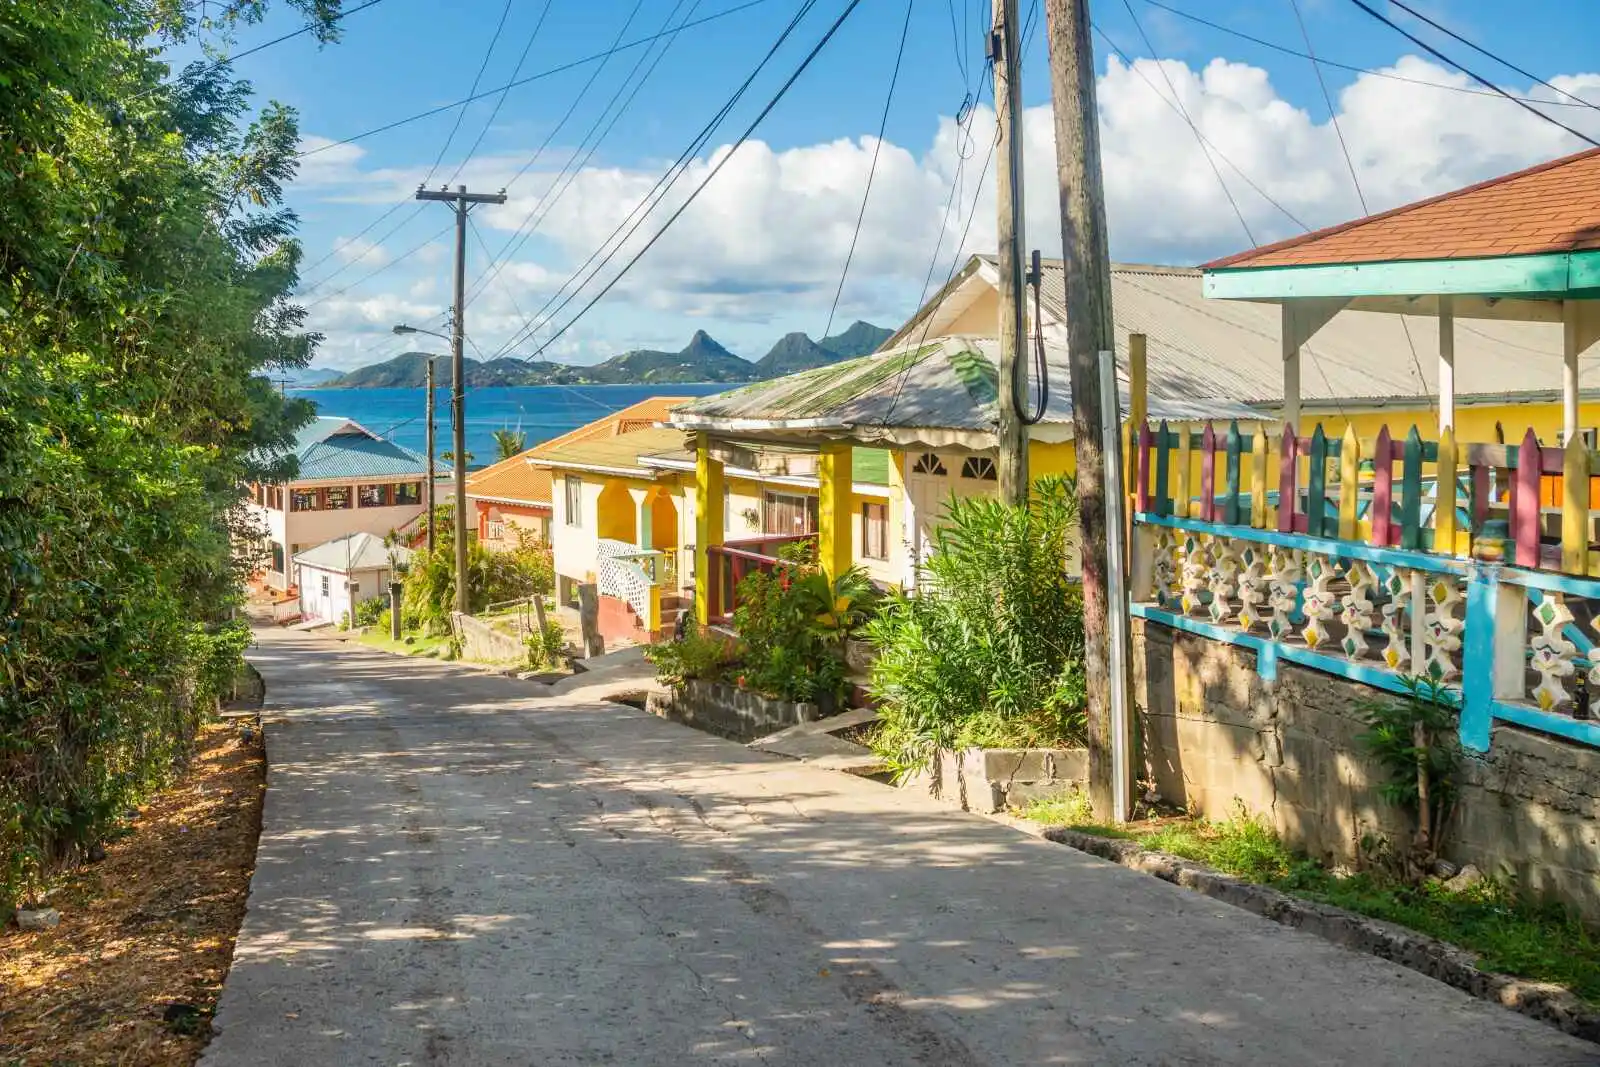 Rue colorée, Île de Mayreau, Saint-Vincent-et-les-Grenadines, Caraïbes